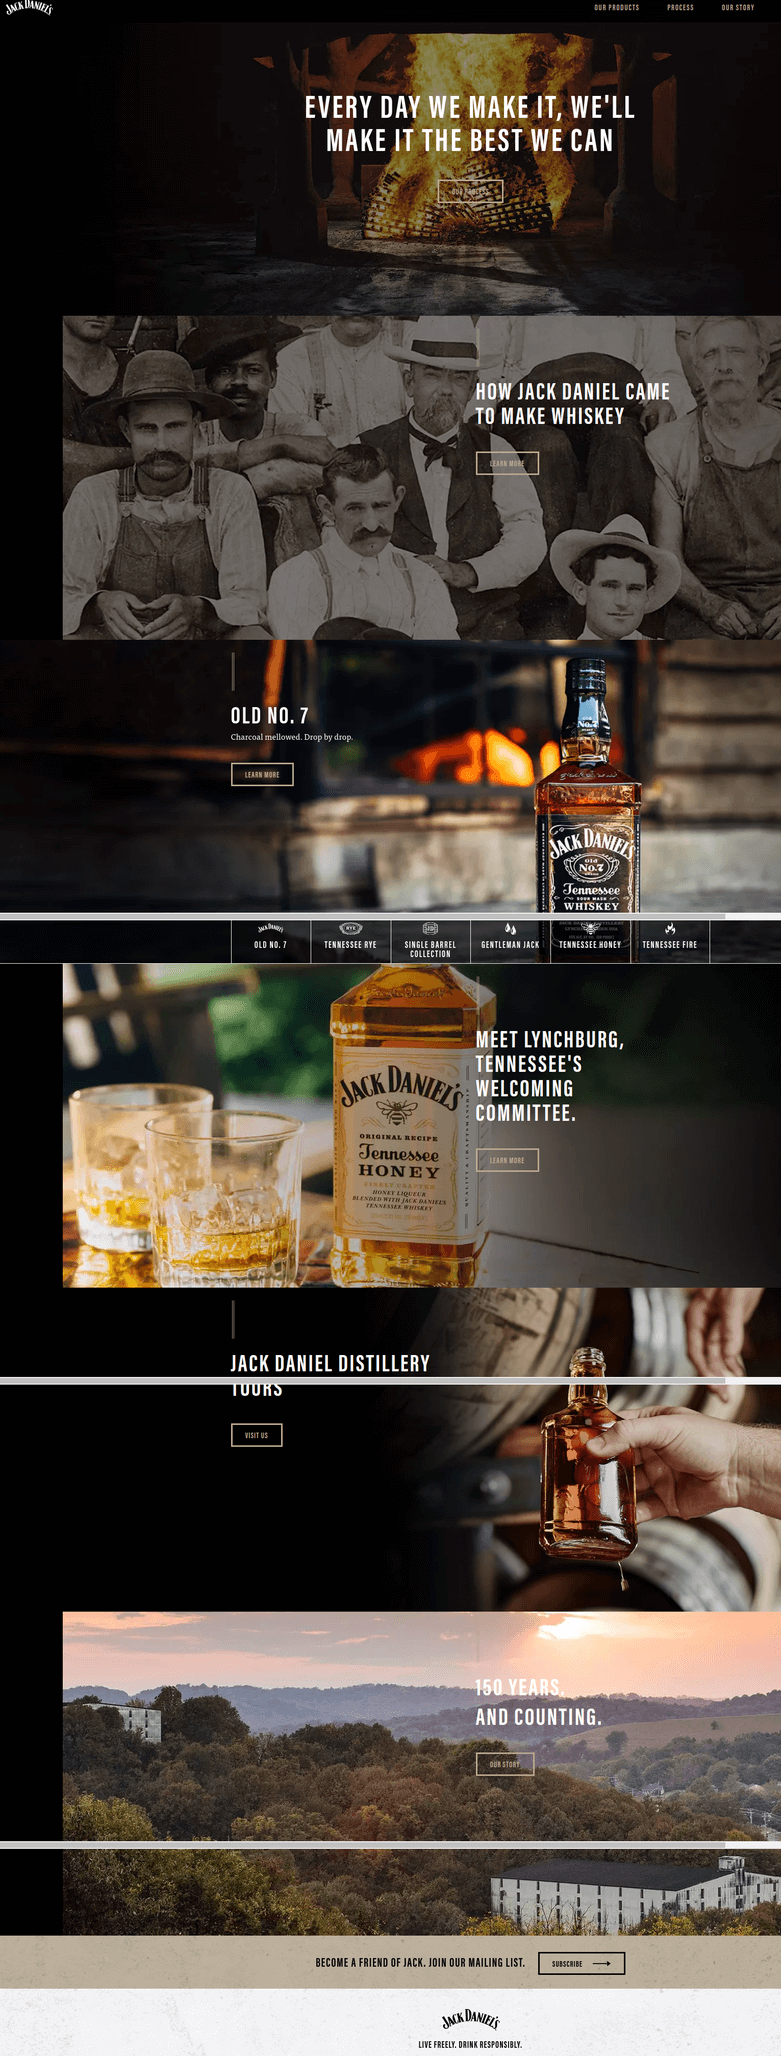 Jack Daniel's website